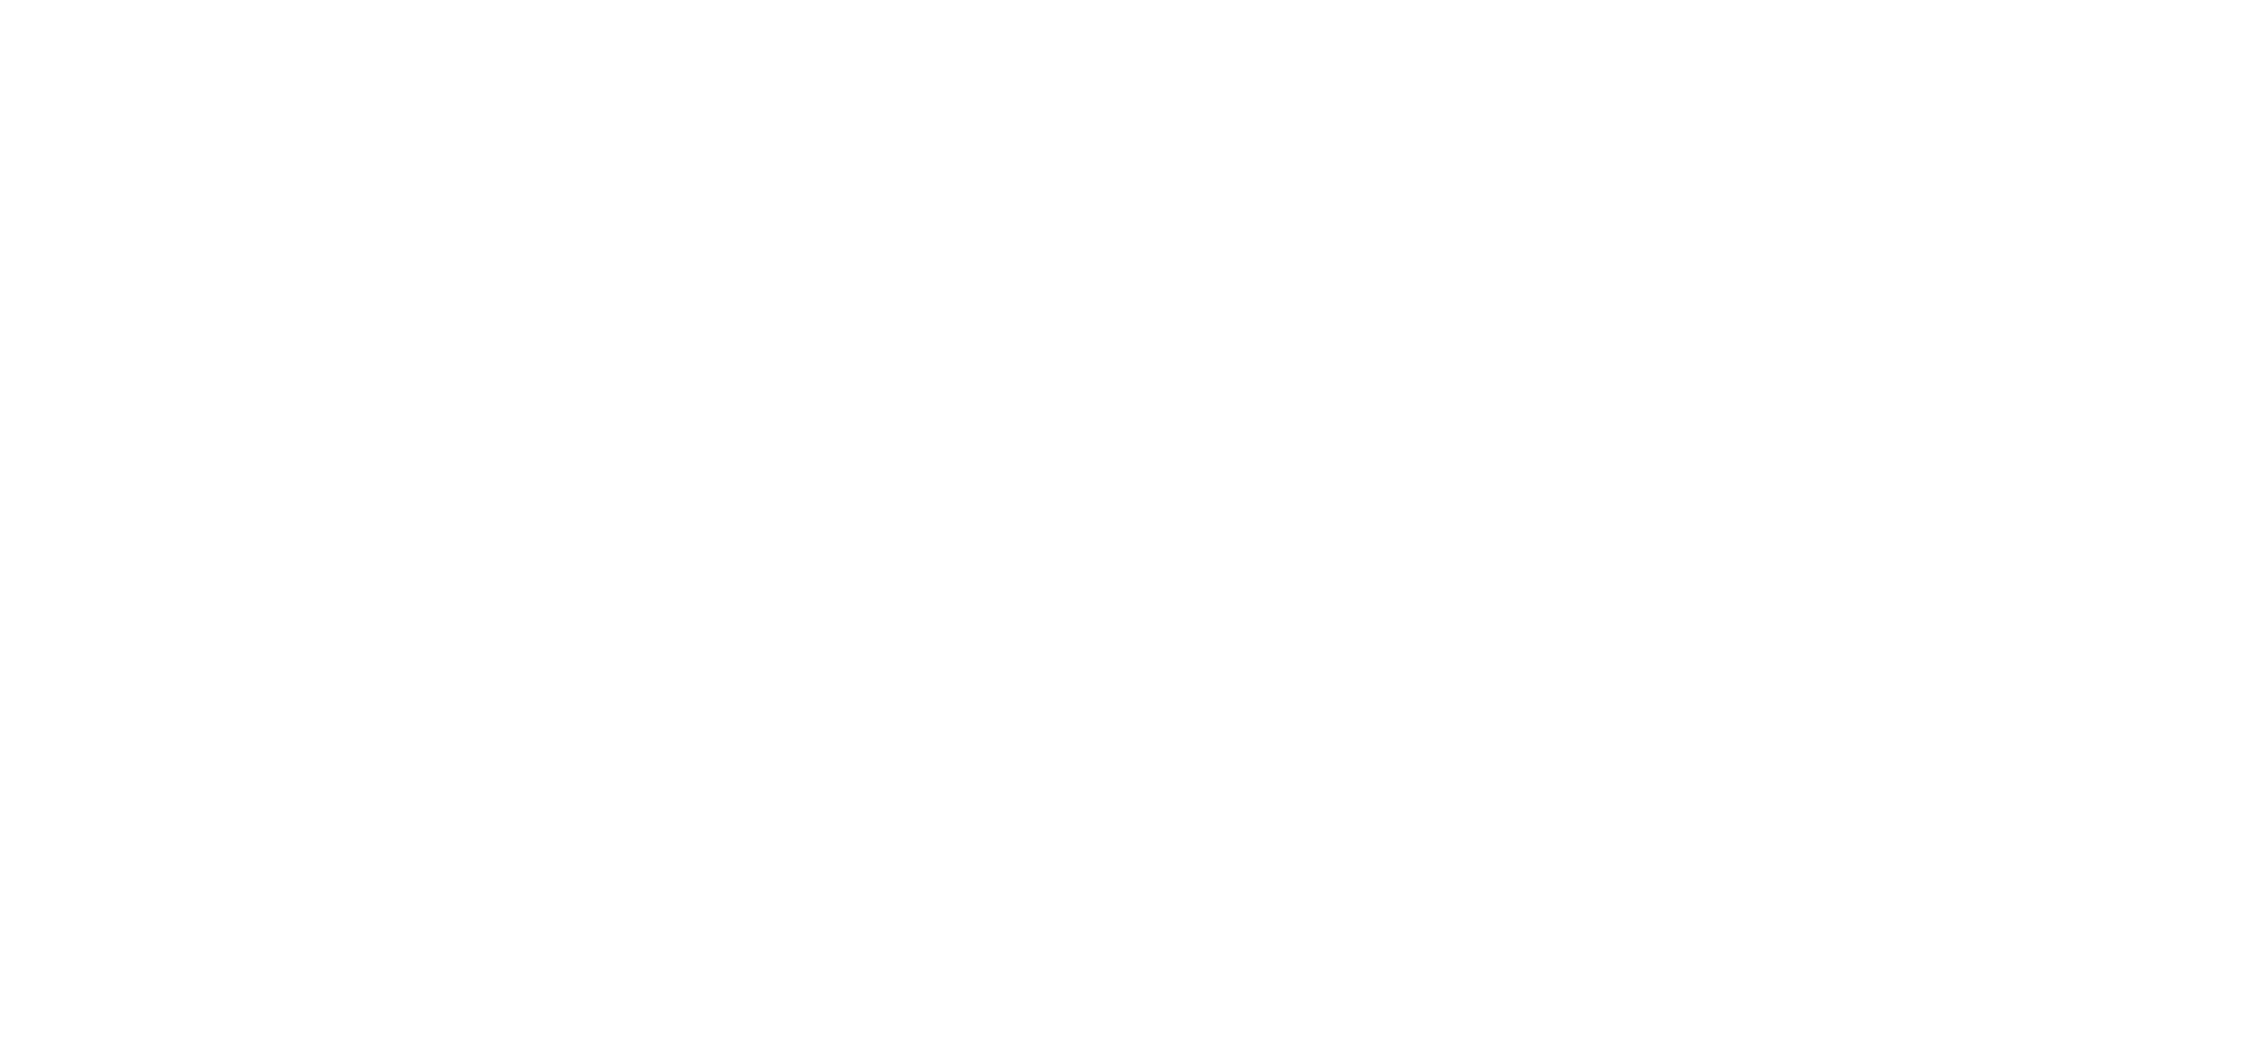 Vapur Seferleri Haberleri - İz Gazete - İzmir'in Gazetesi